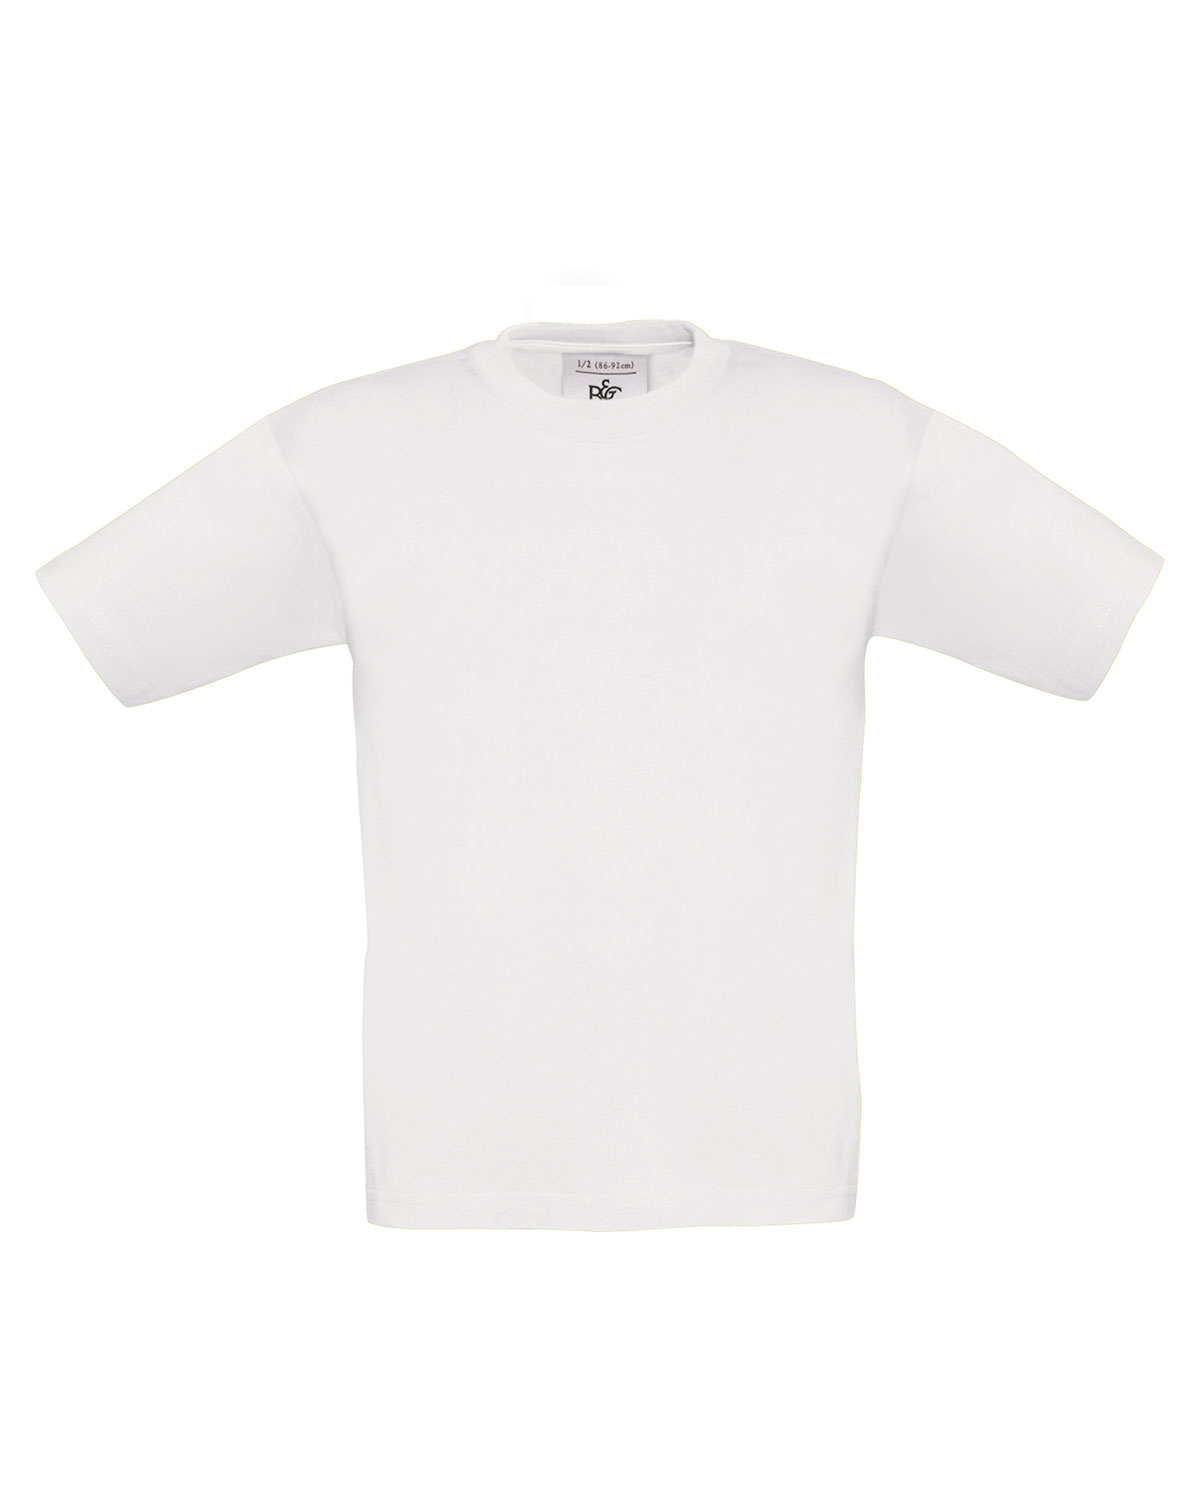 T-Shirt Exact 190 /kids White 152/164